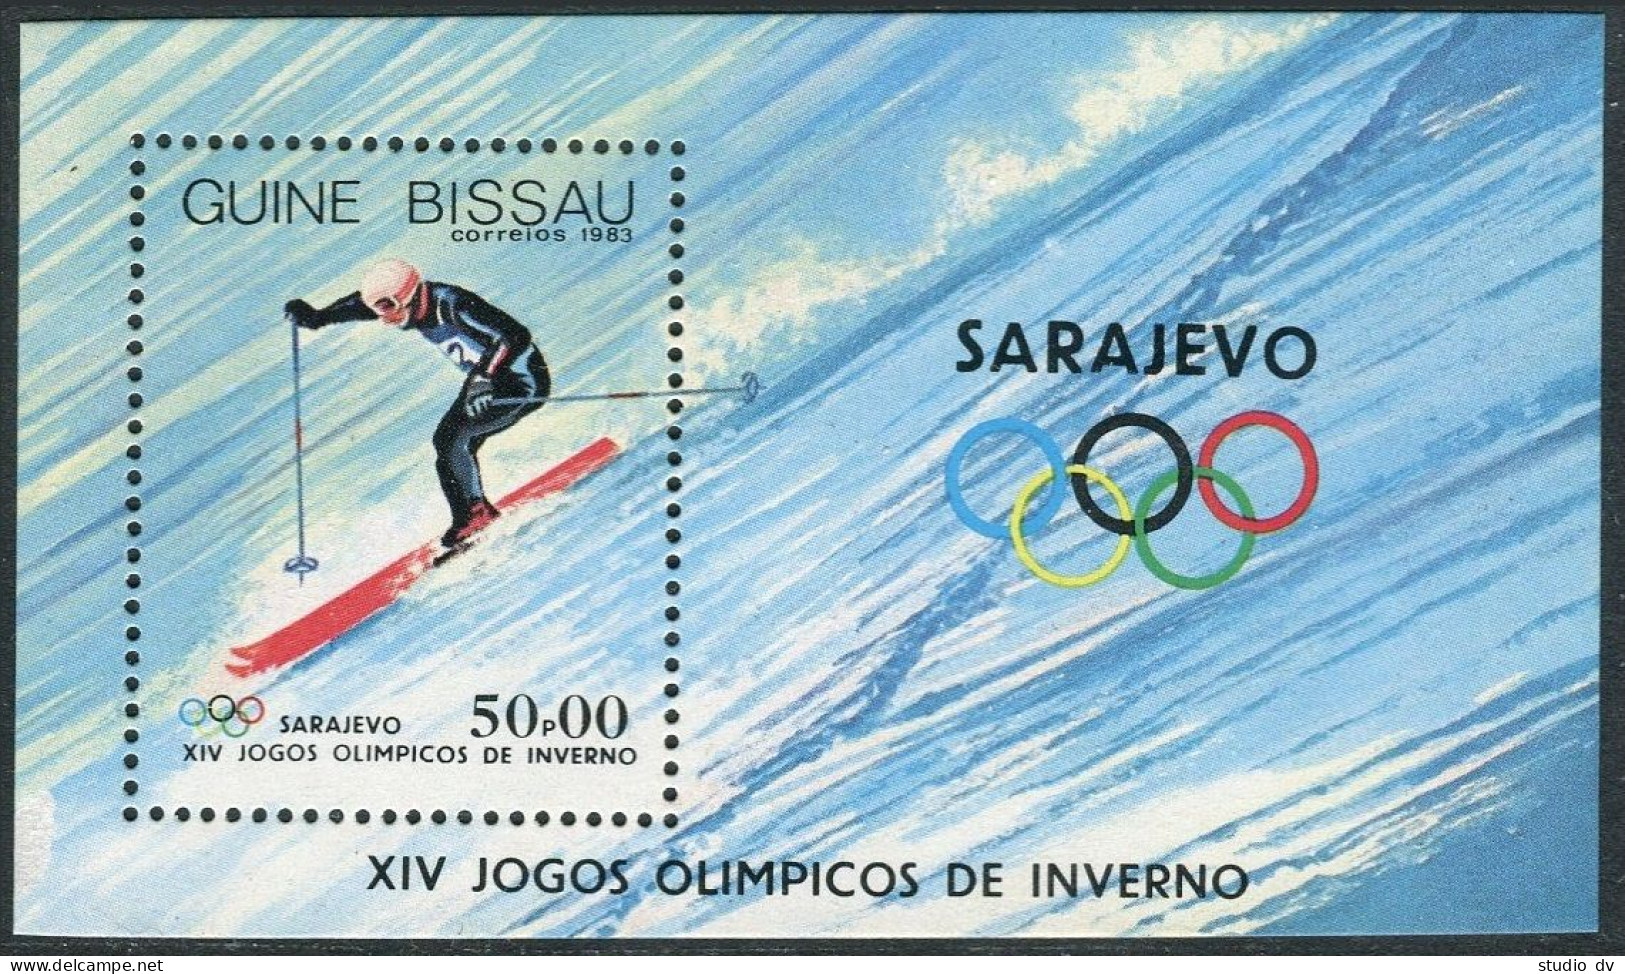 Guinea Bissau 505-512, MNH. Mi 709-715,Bl.255. Olympics, Sarajevo-1984. Hockey, - Guinée-Bissau